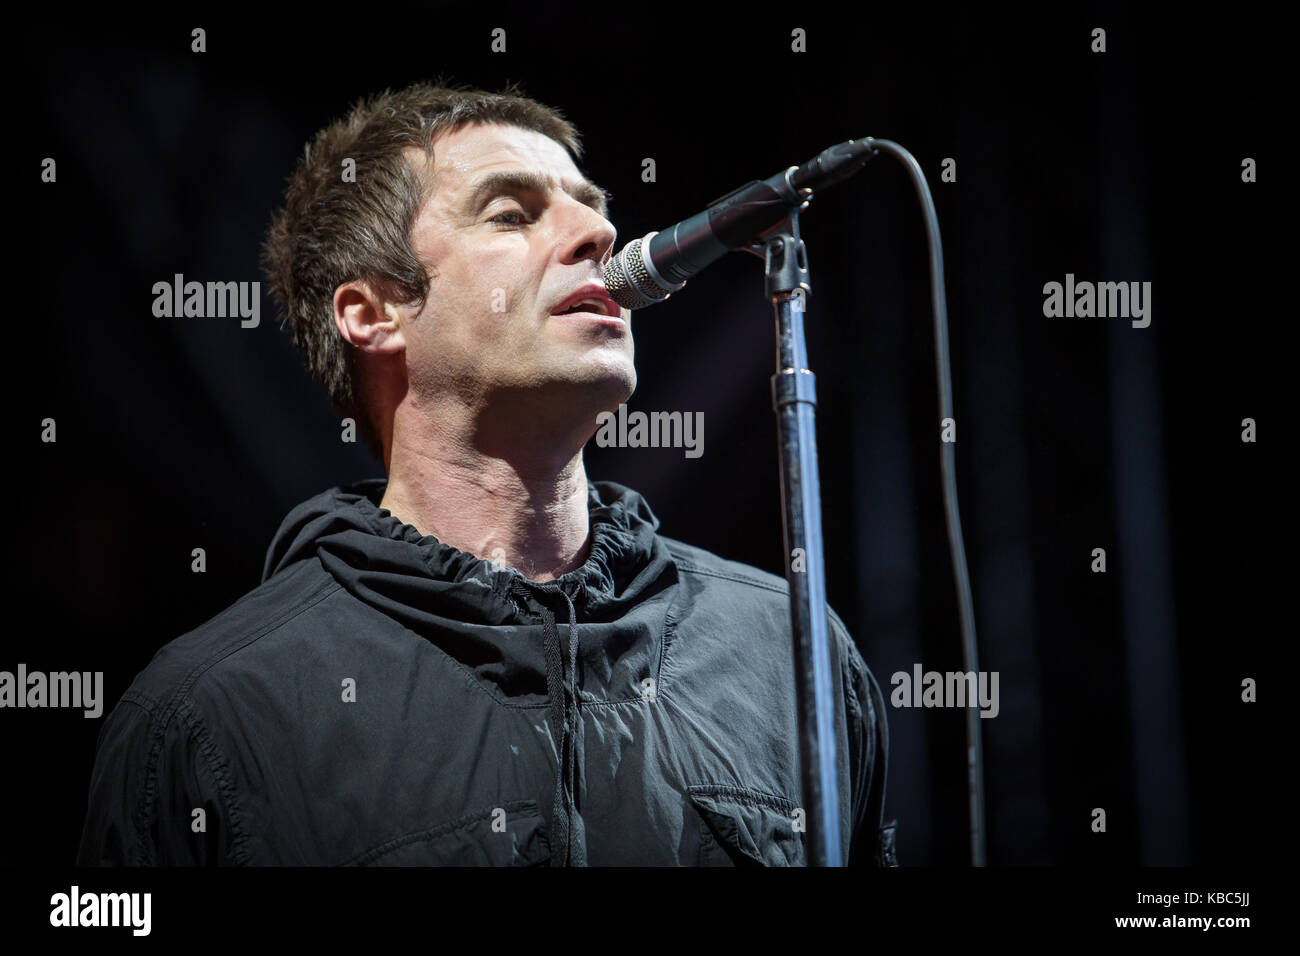 Le chanteur, compositeur et musicien anglais Liam Gallagher interprète un concert en direct pendant le festival de musique norvégien Bergenfest 2017 à Bergen. Liam Gallagher est connu comme le chanteur principal du groupe de rock anglais Oasis. Norvège, 14/06 2017. Banque D'Images